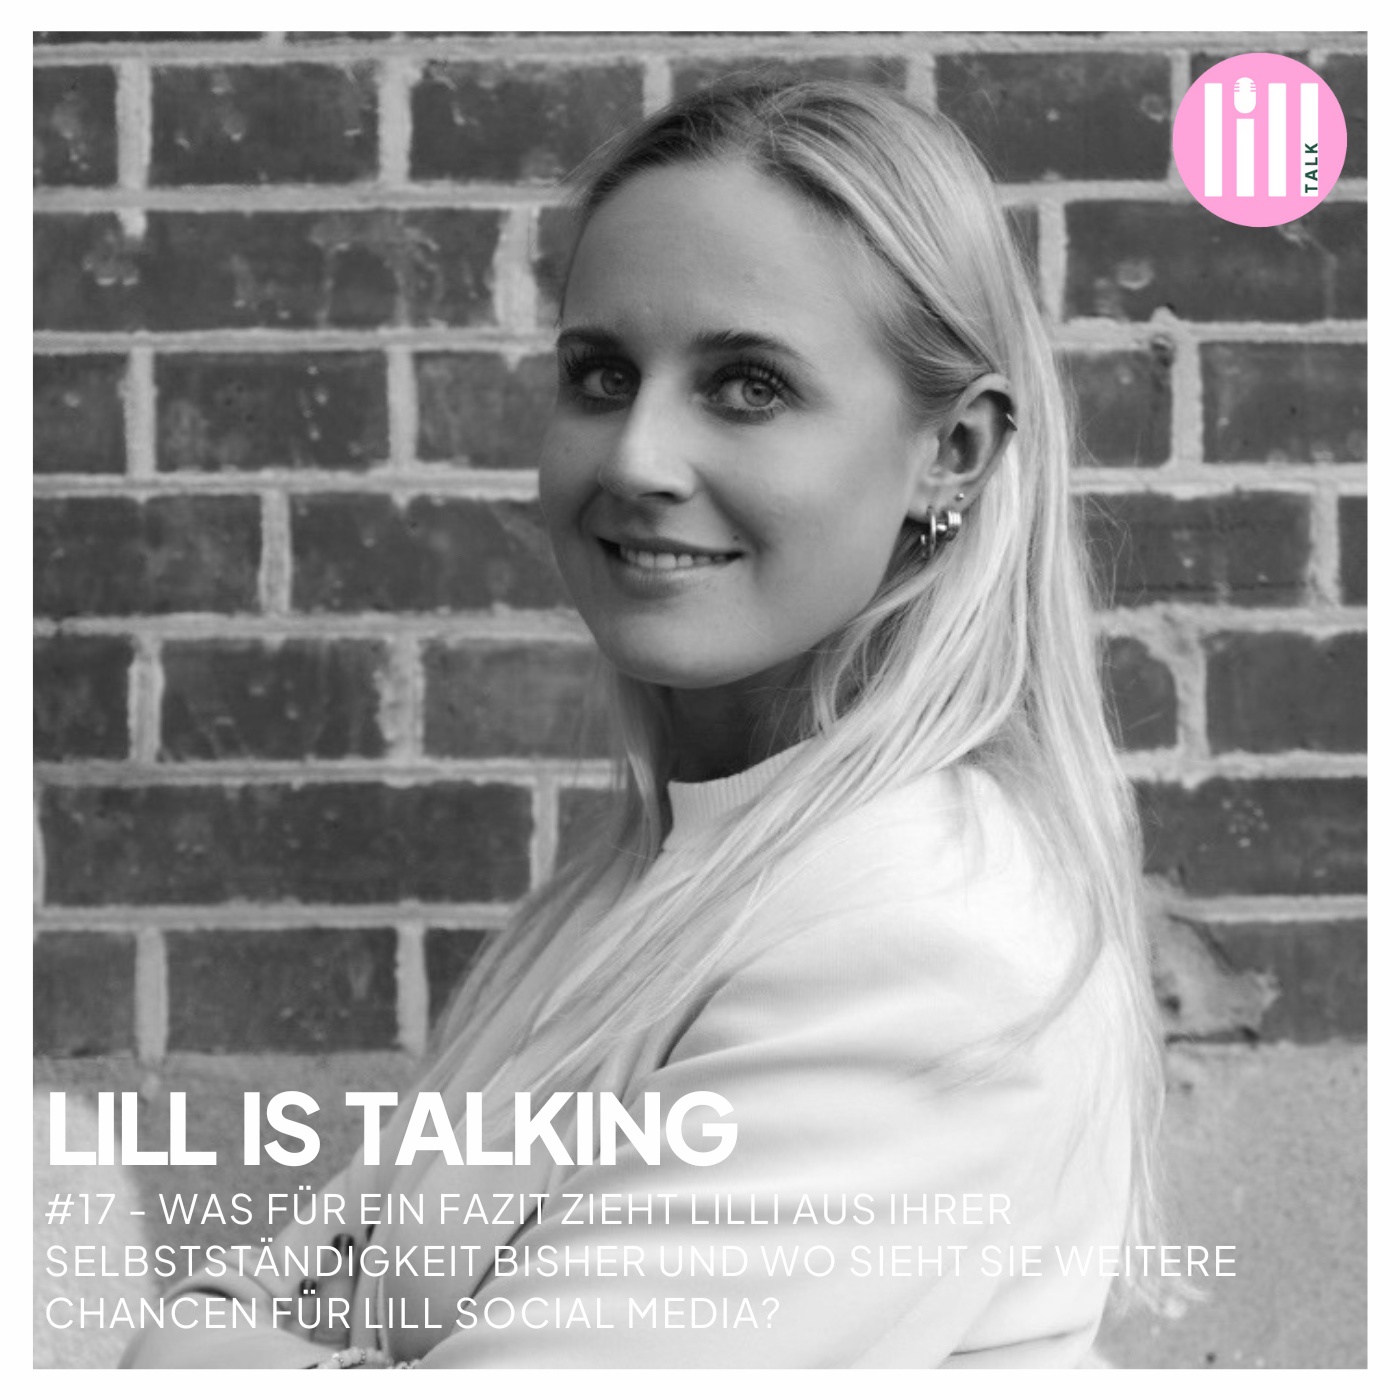 #17 LILL IS TALKING  - Welches Fazit zieht Lilli aus ihrer Selbstständigkeit und wo sieht sie weitere Chancen